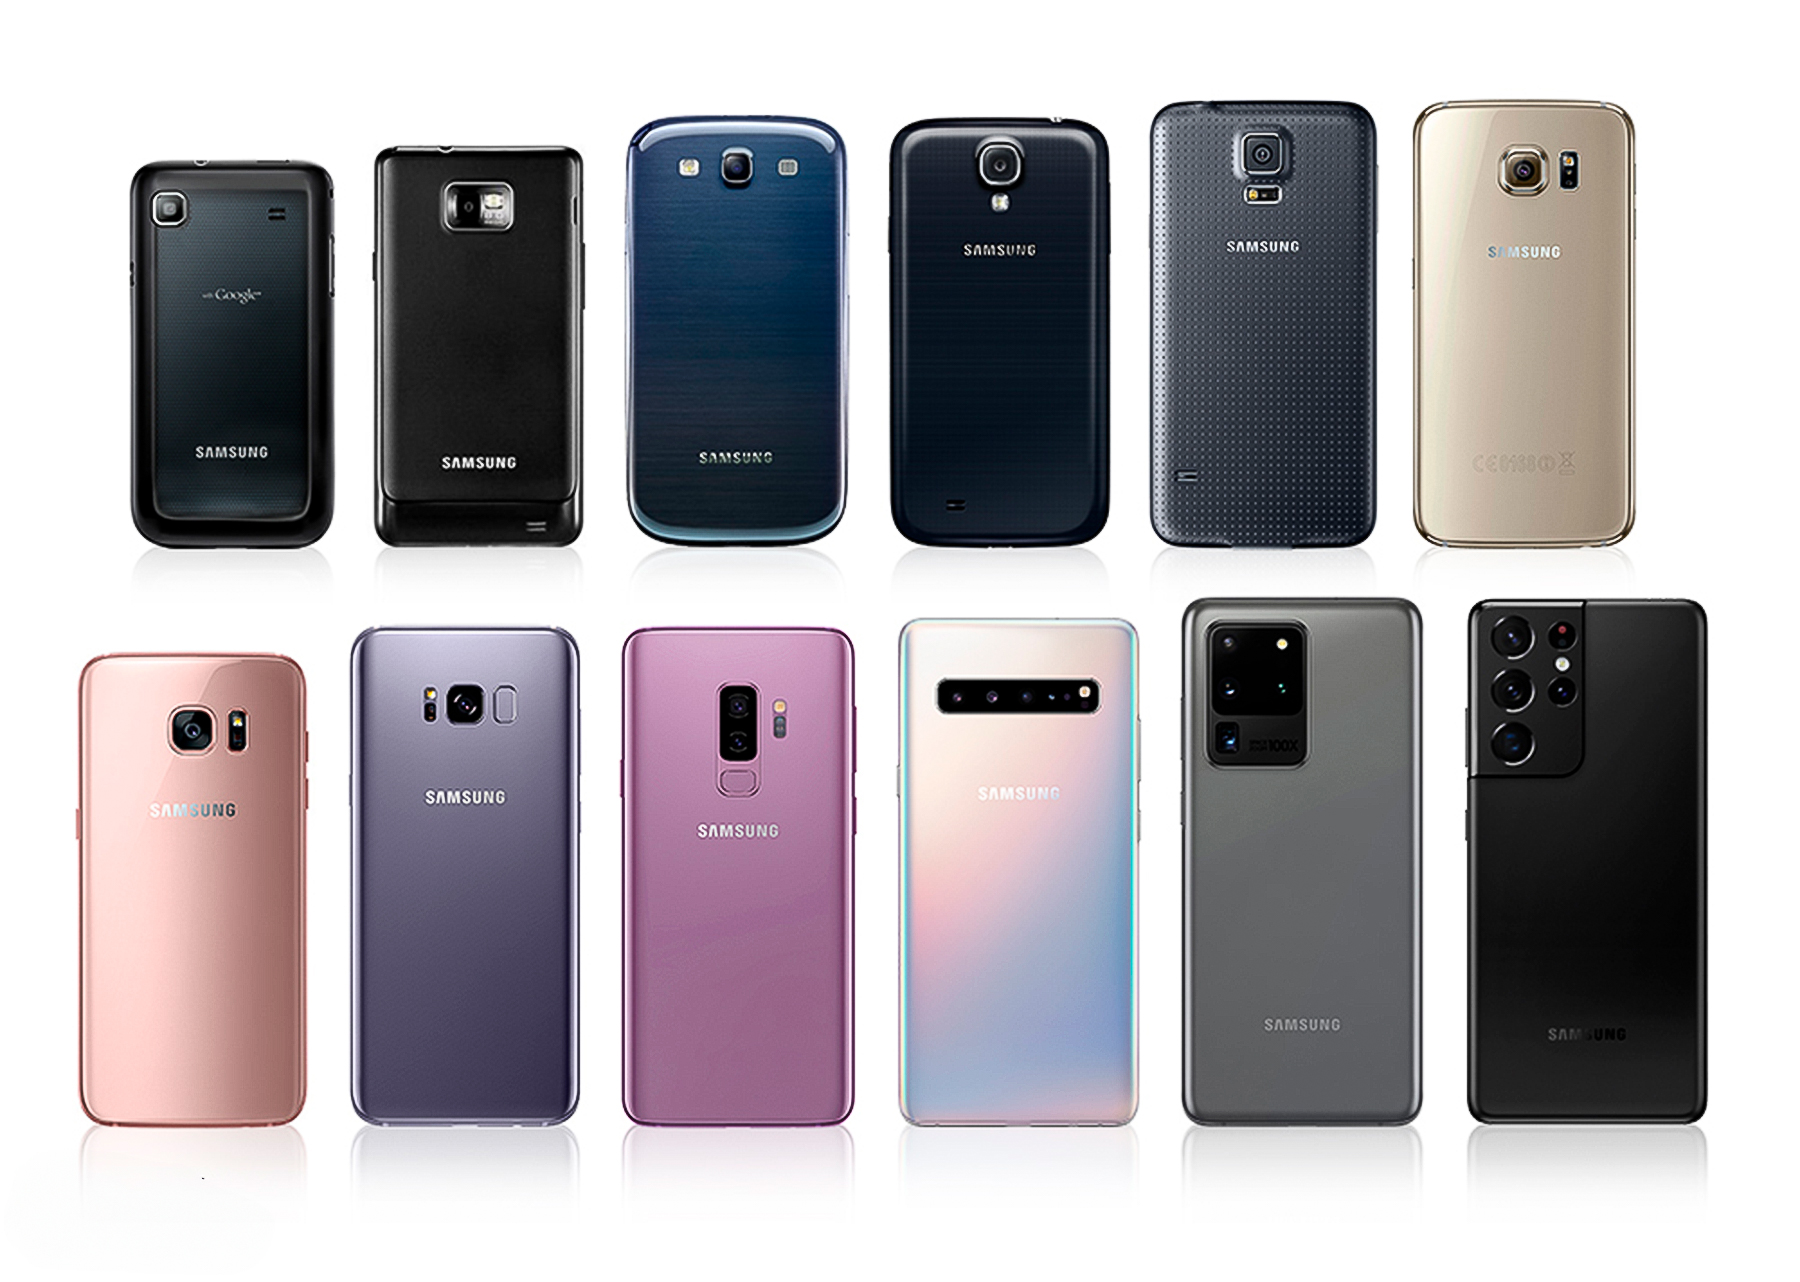 Análise da evolução da série Samsung Galaxy S, observando as características e mudanças de cada modelo desde 2010.